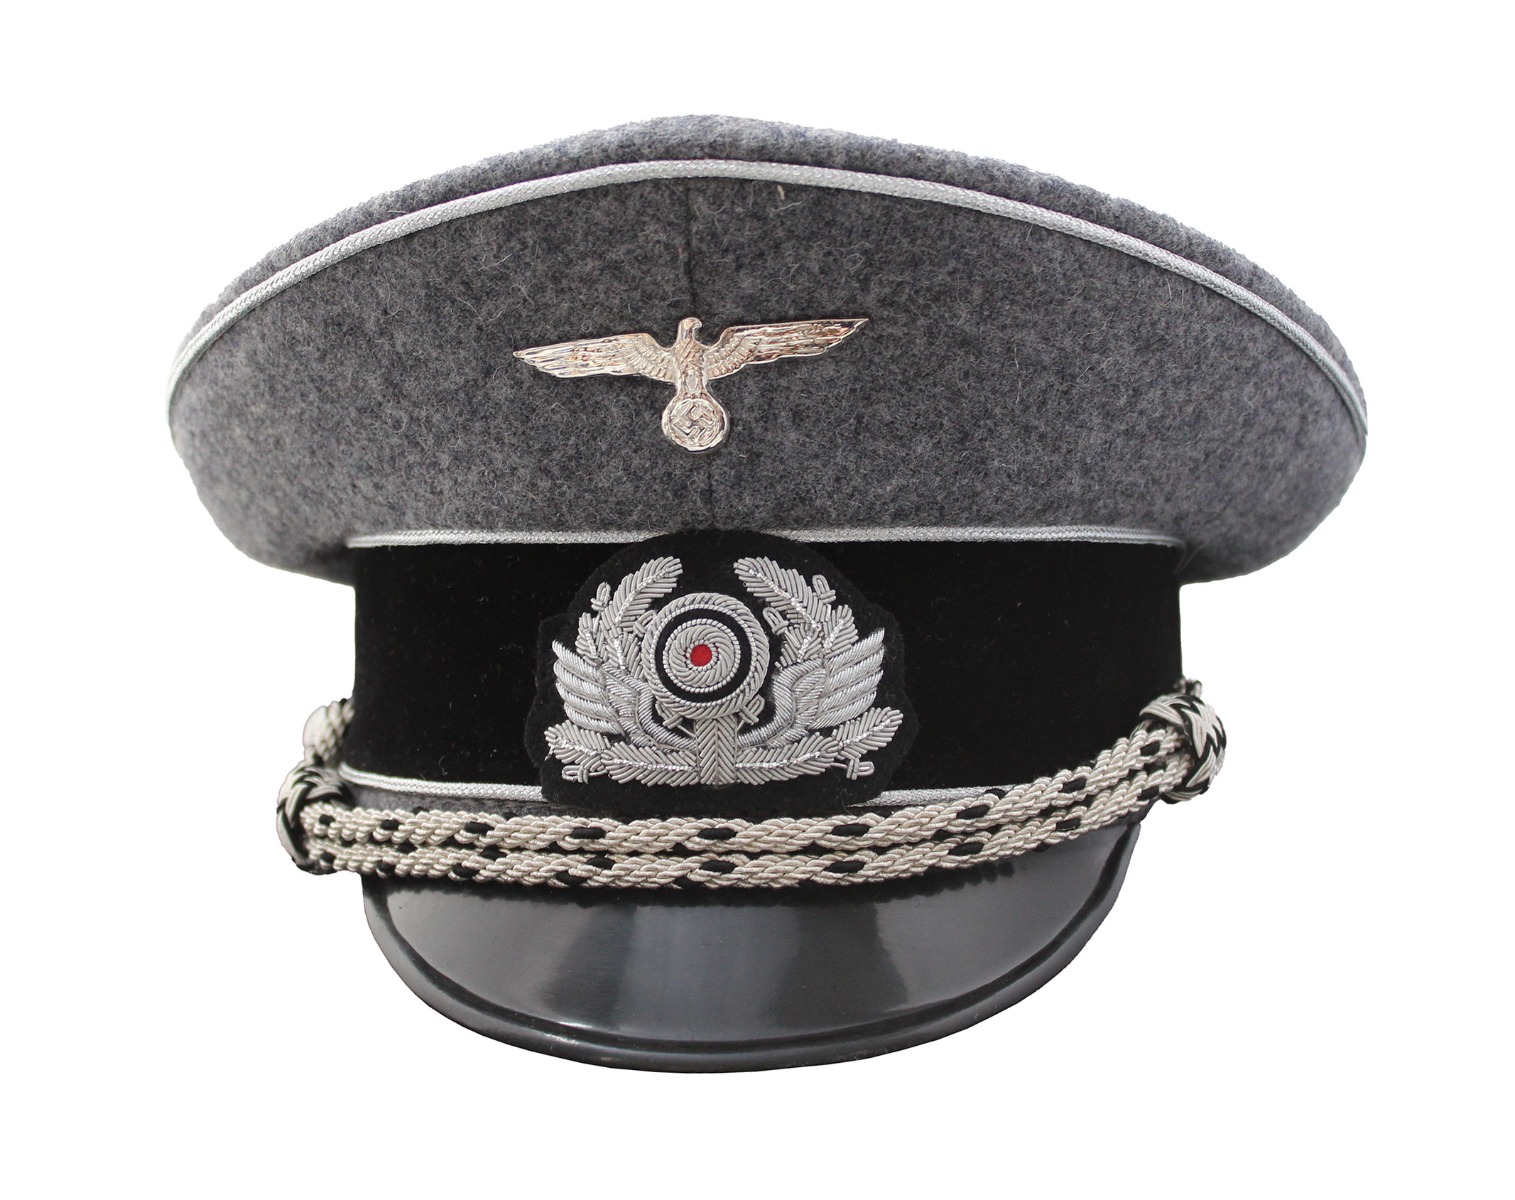 GERMAN RAILWAY POLICE LEADER VISOR CAP SCHIRMMUTZE 